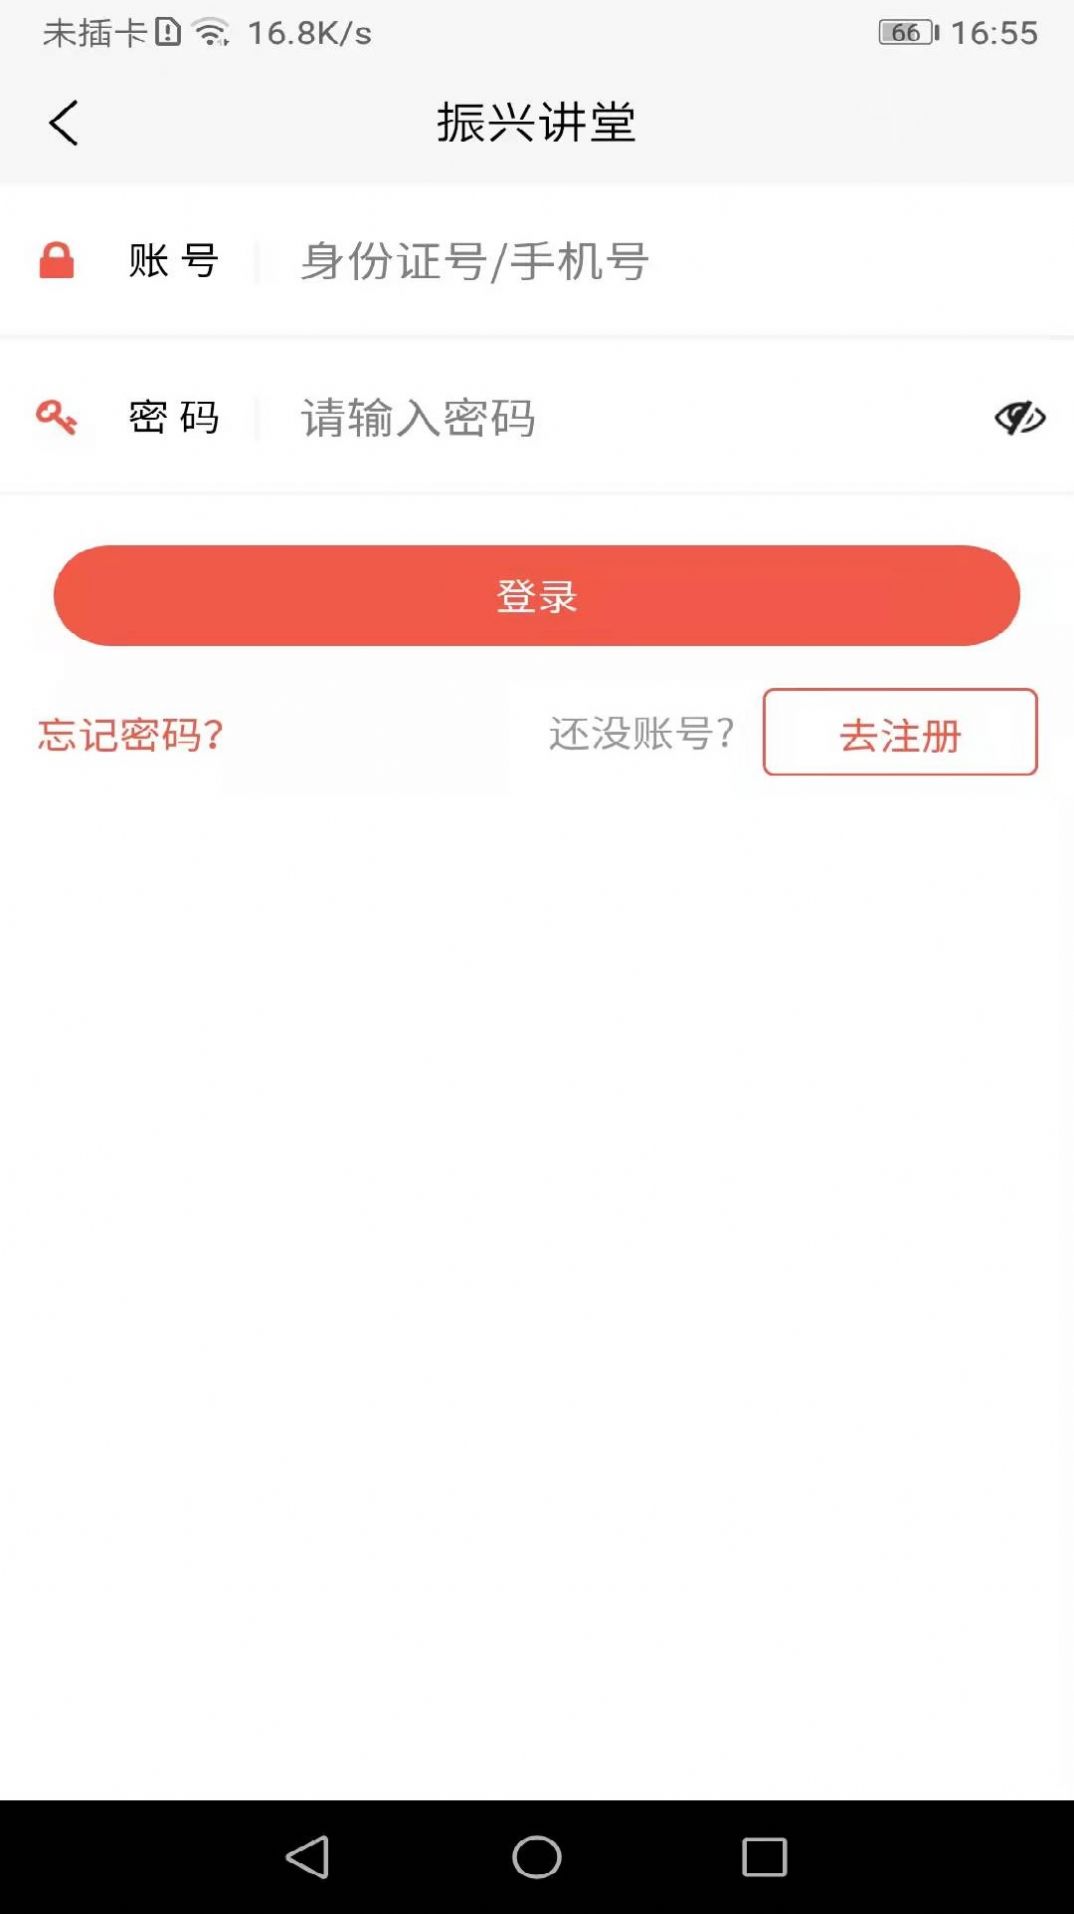 振兴讲堂学习app官方版 1.0.3下载